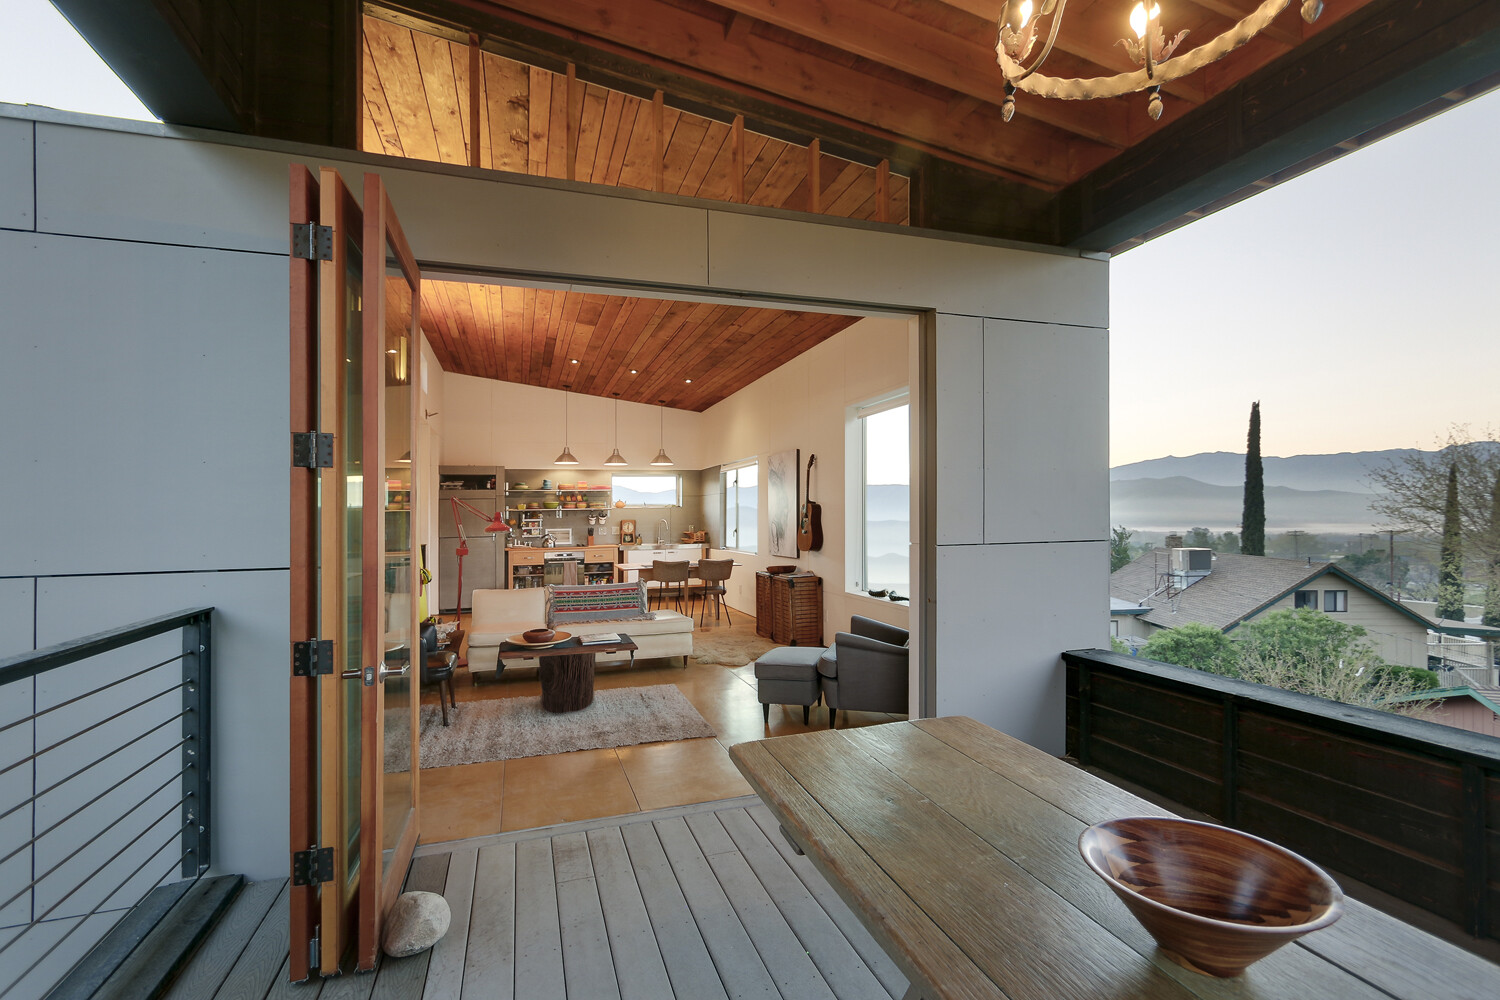 510 Cabin 1000 square foot lake house by Hunter Leggitt - HomeWorldDesign (7)